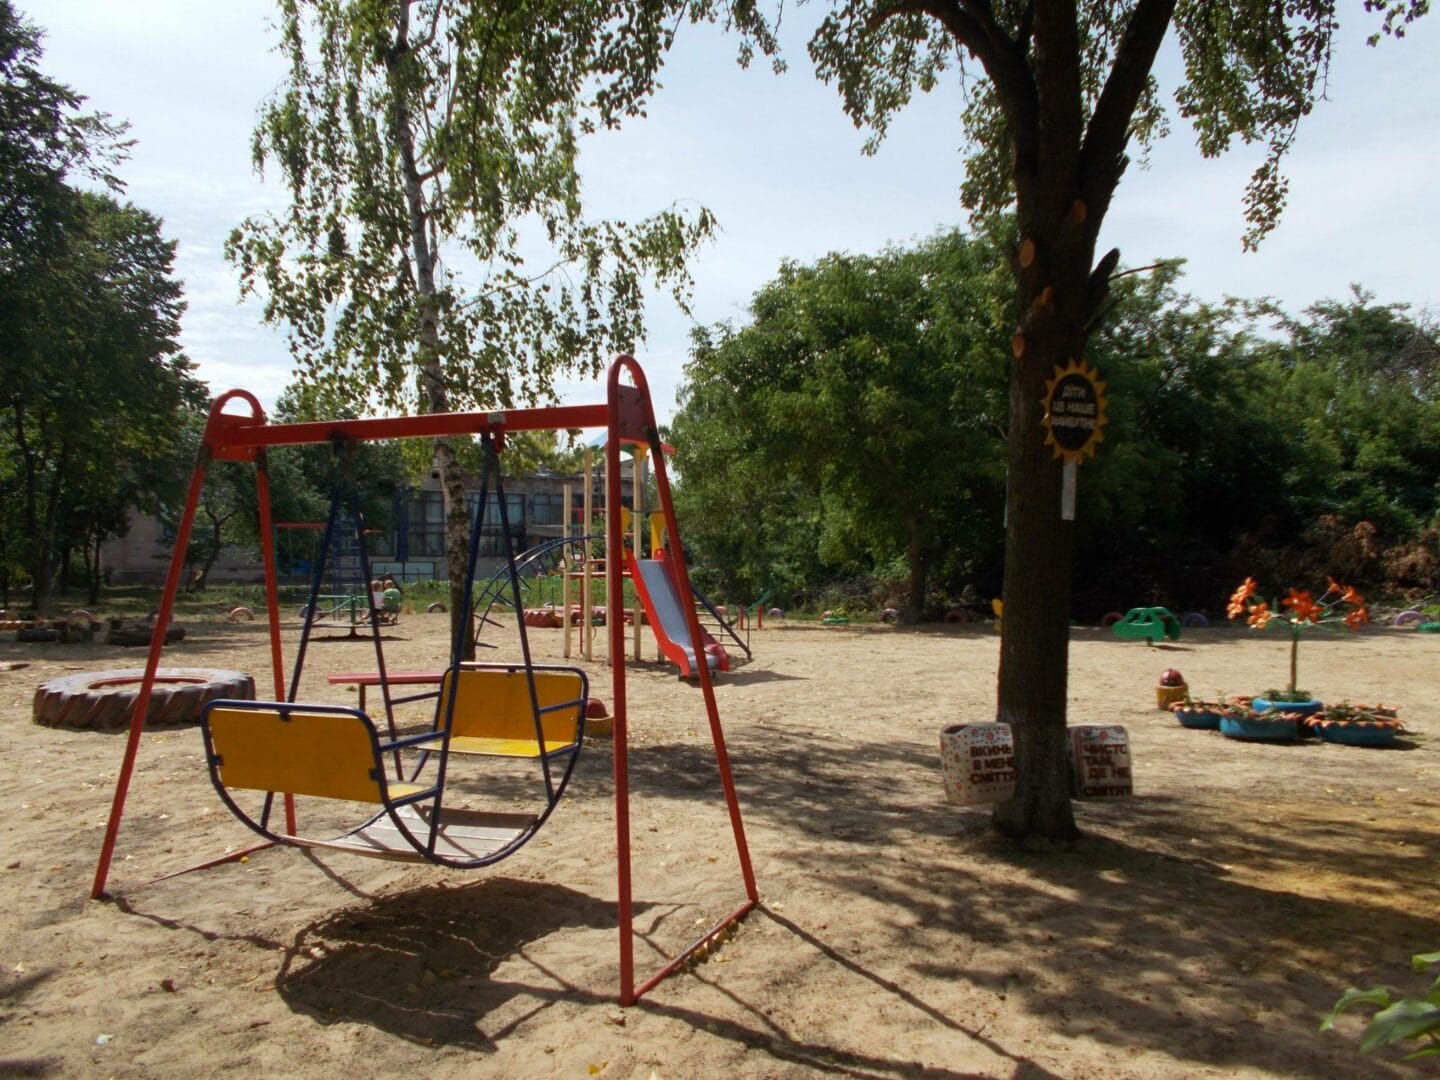 Arrangement of a children's playground